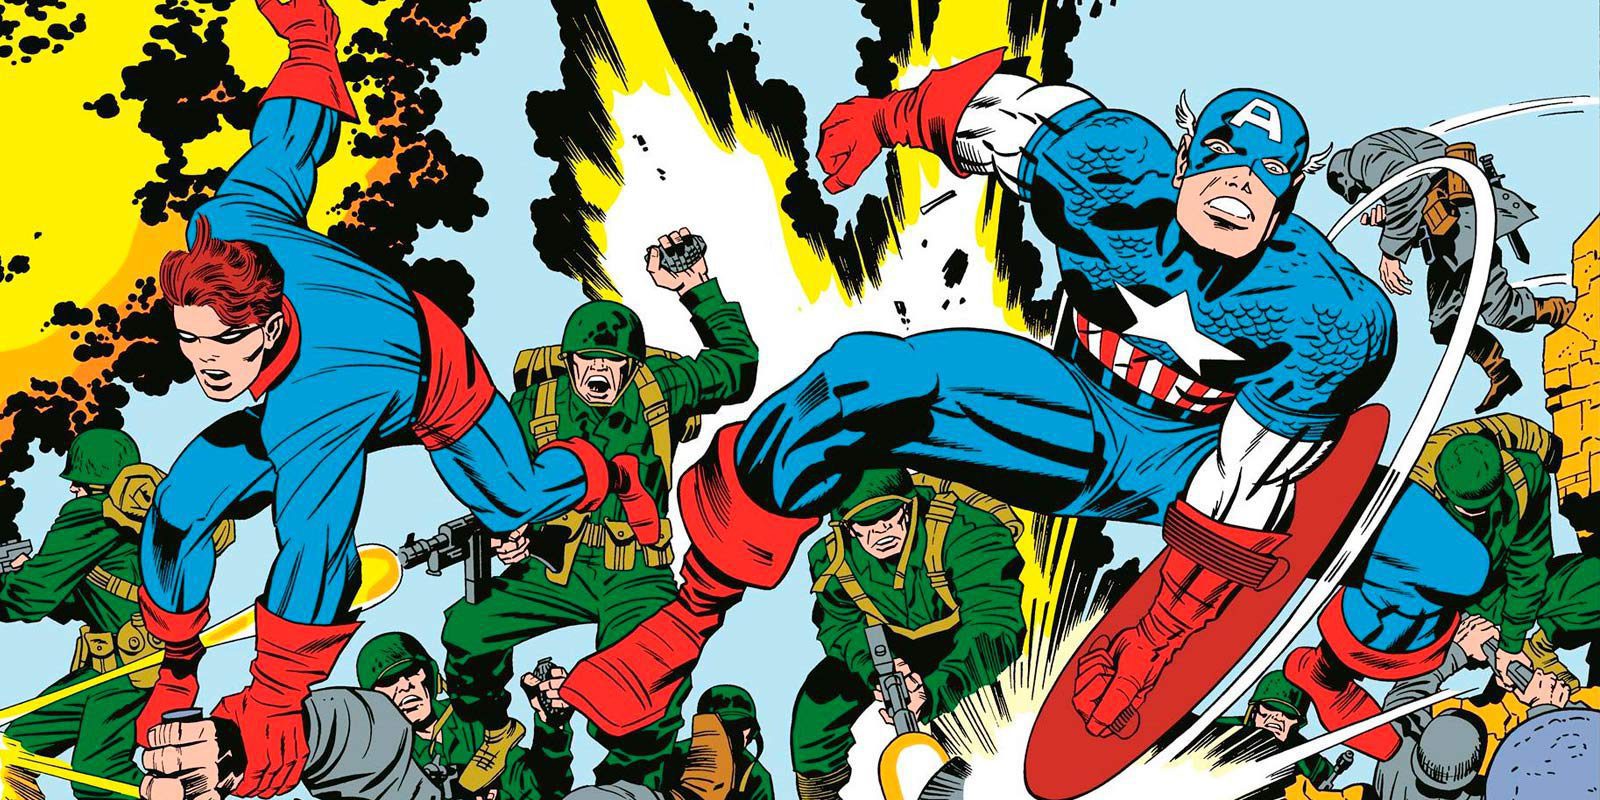 Se cumplen 100 años del nacimiento de Jack Kirby, uno de los padres de Marvel